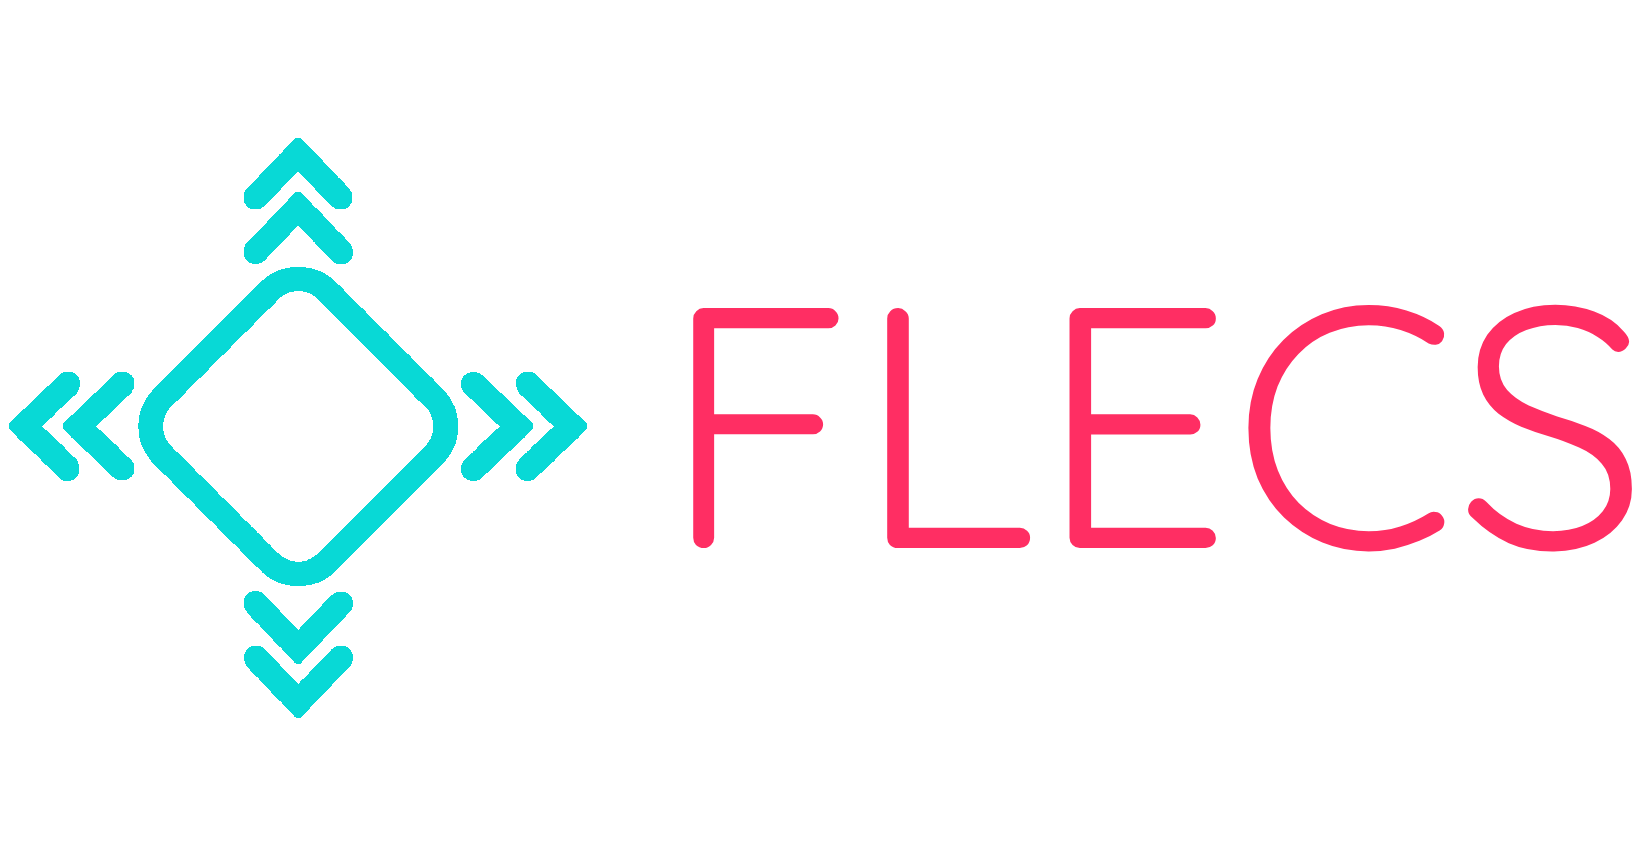 FLECS öffnet den Markt für INOSOFT - FLECS